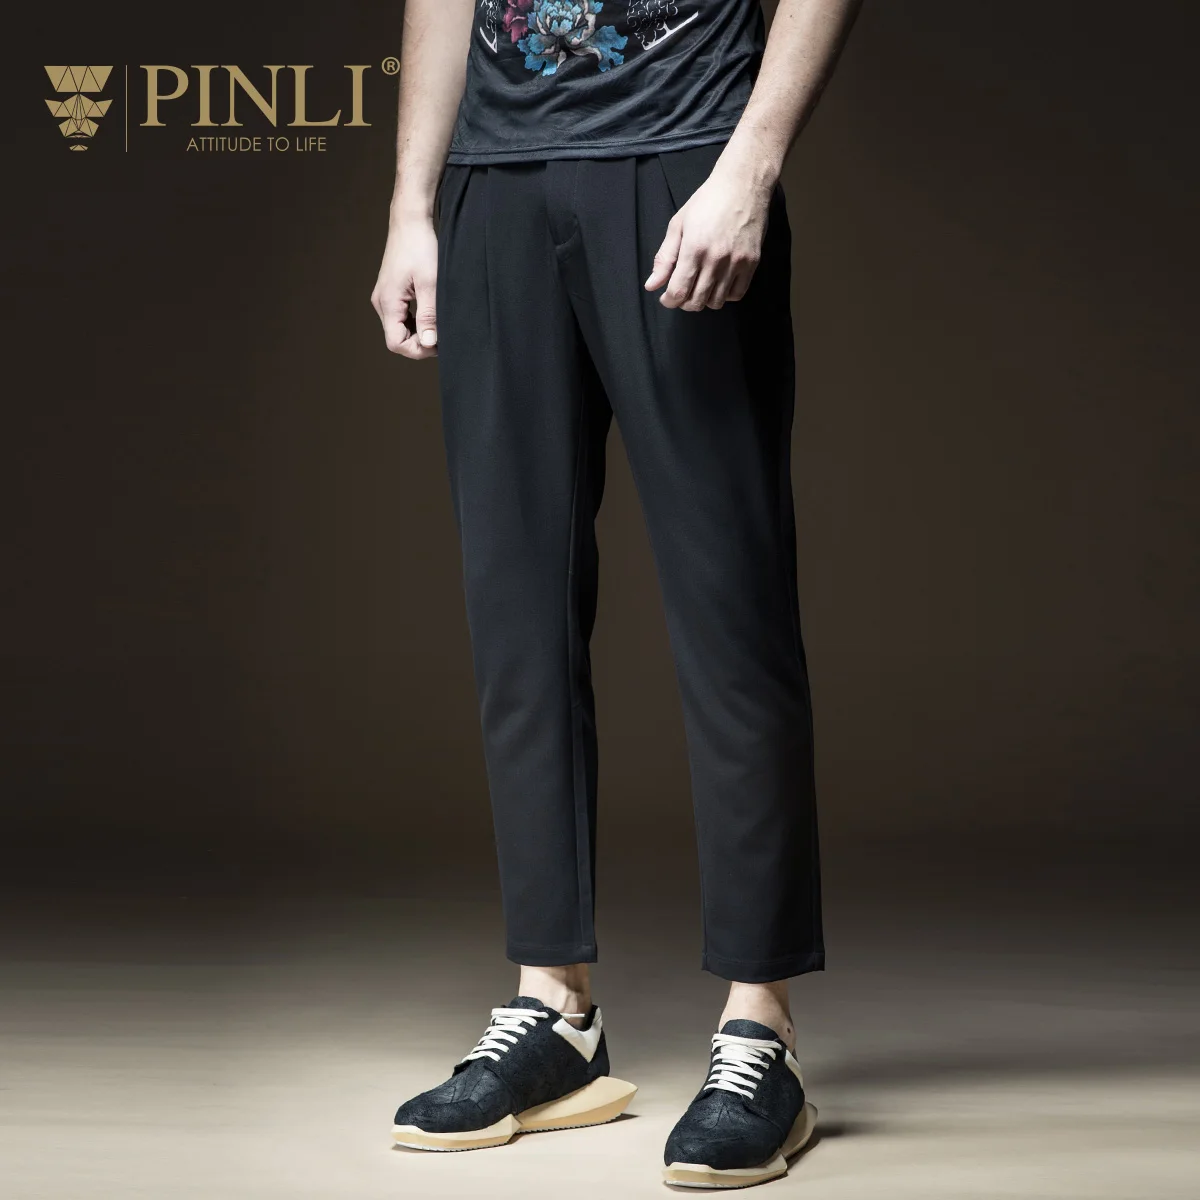 2019 спортивные штаны, штаны для бега, Новое поступление, летняя мужская одежда Pepe Pinli, чистый цвет, маленькие ноги и длинные бумеры, B182317298